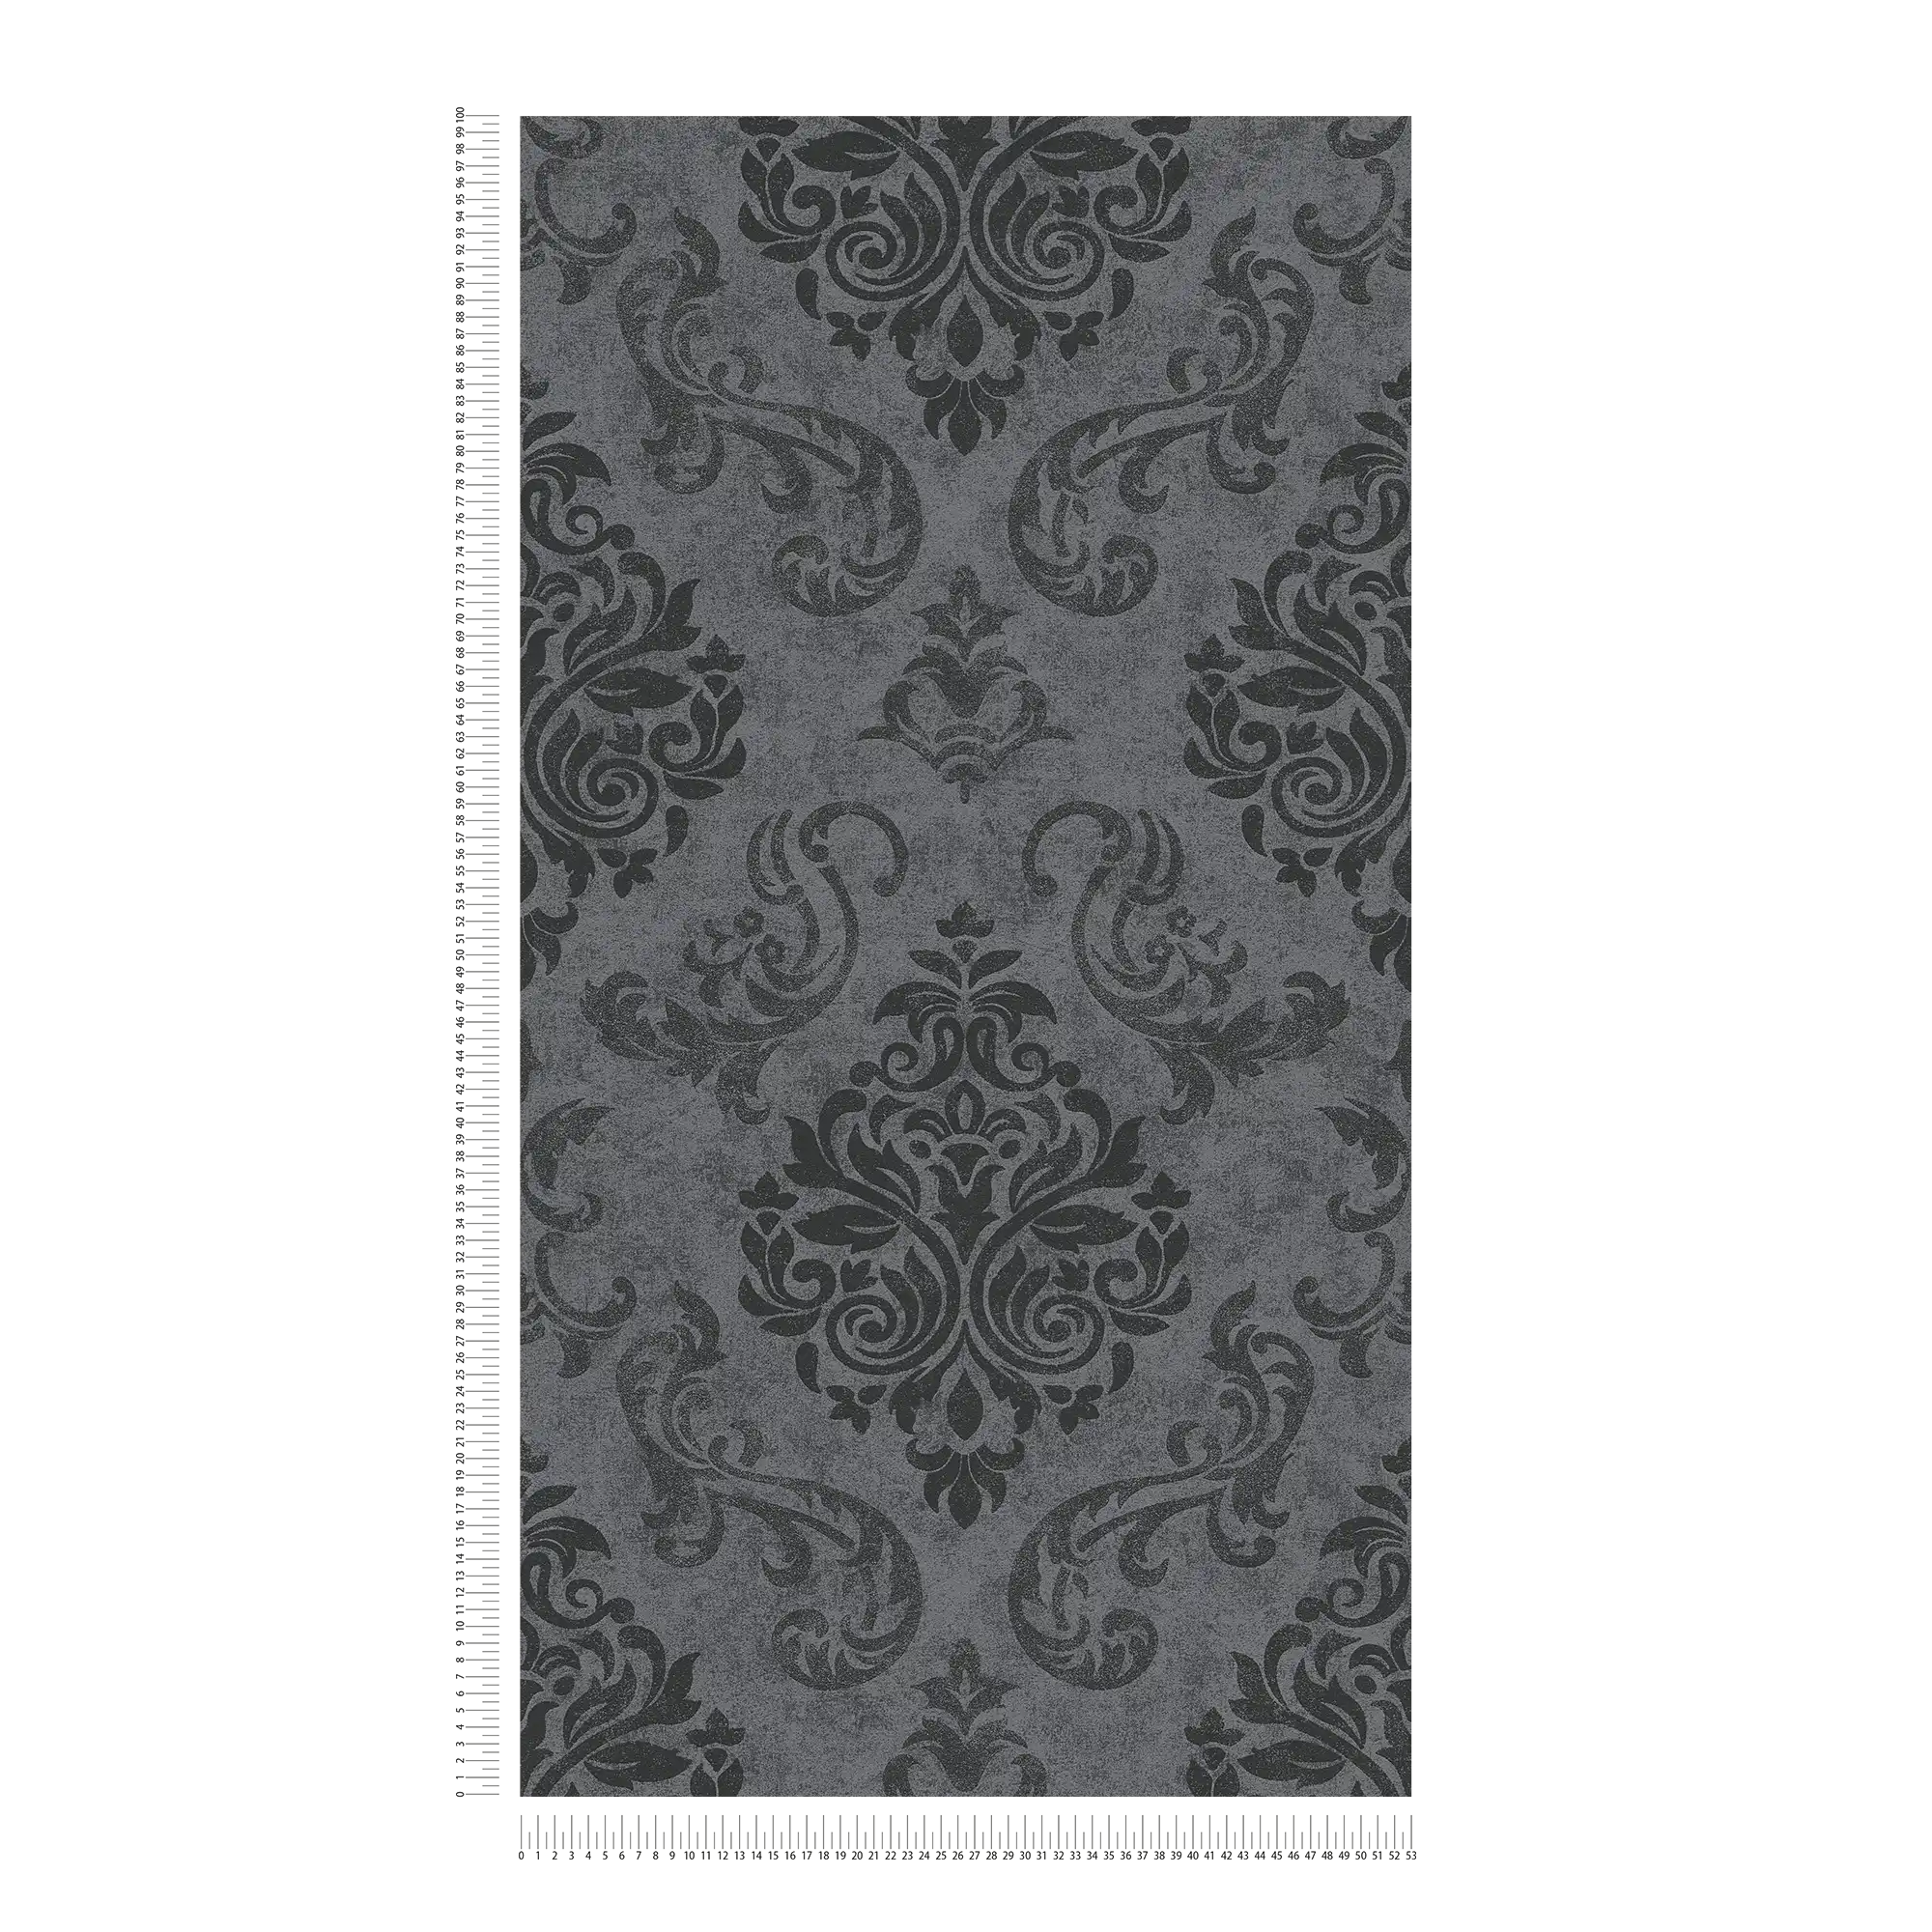             Ornements papier peint style baroque avec effet scintillant - gris, métallique, noir
        